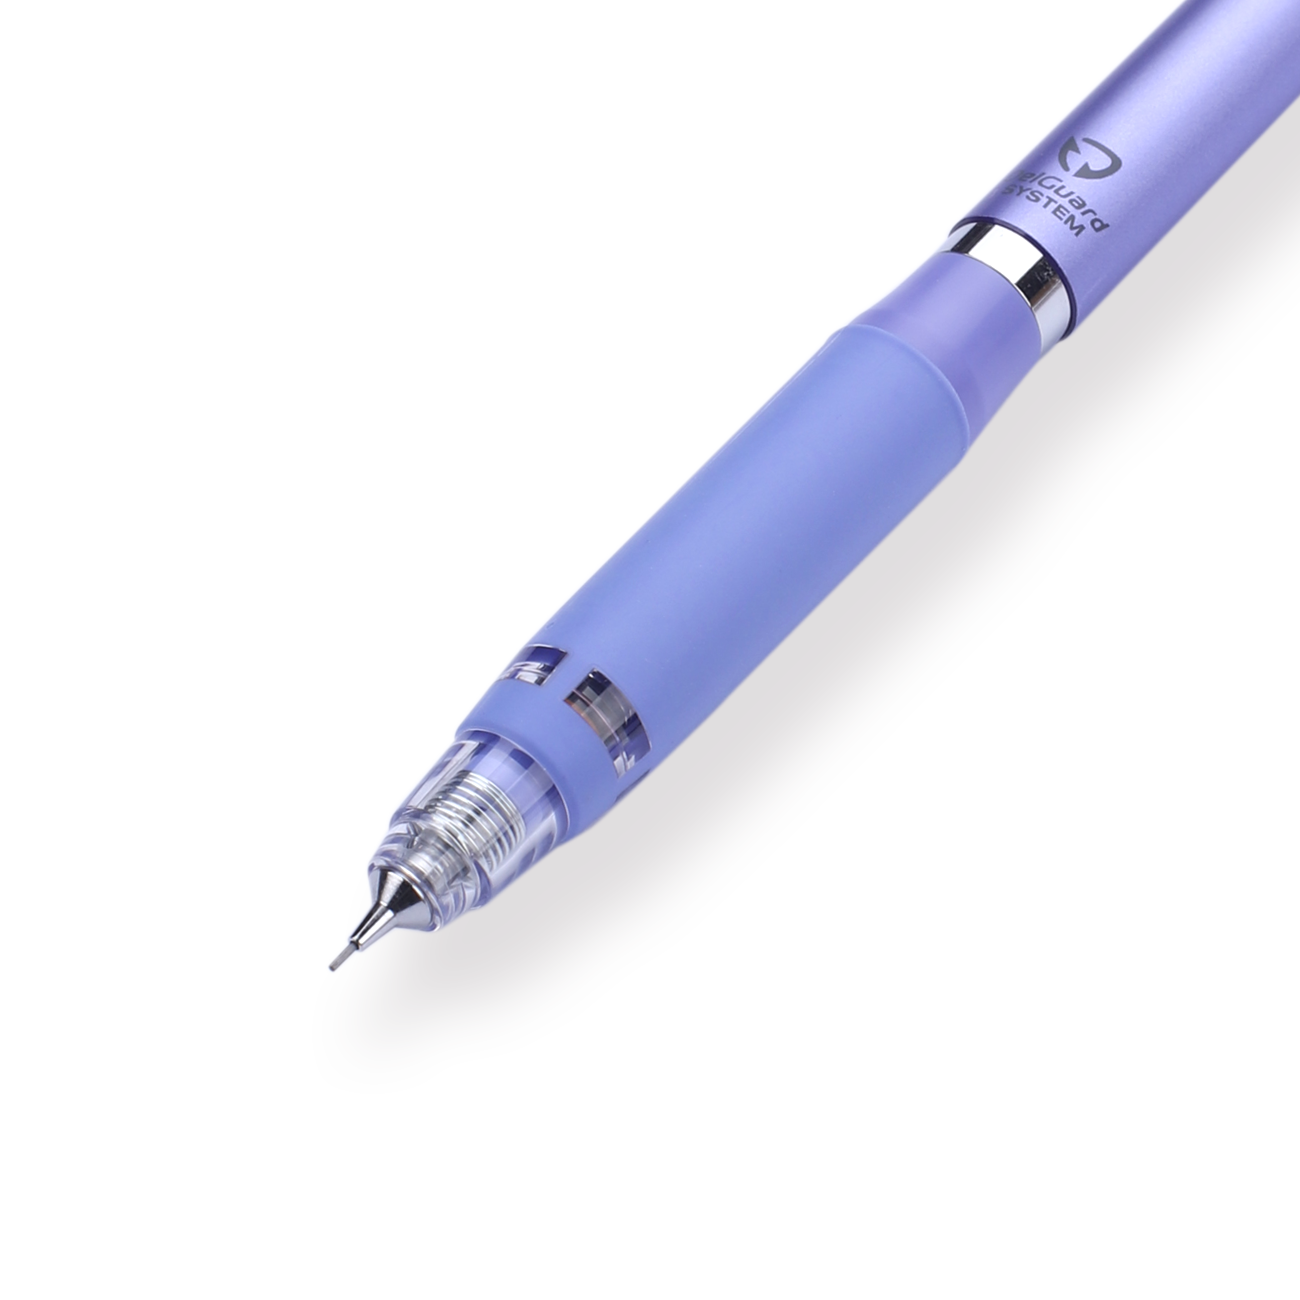 Zebra DelGuard Type ER Mechanical Pencil  - 0.5 mm - Violet